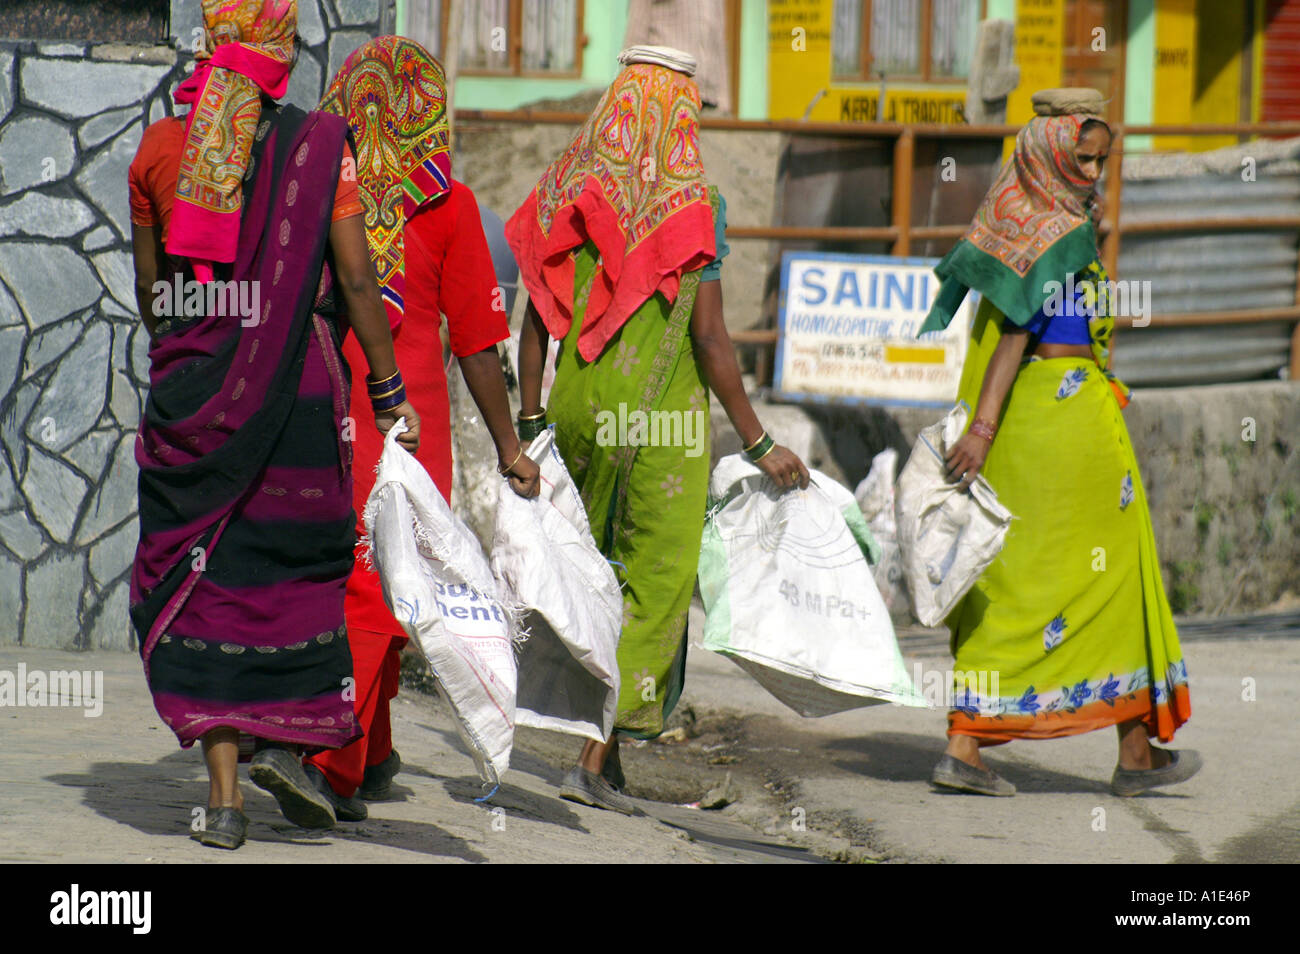 Quatre de l'équipe femmes indiennes en sari coloré travaillant dur transportant des sacs de sable vide au site de construction de la rue, de l'Inde Banque D'Images